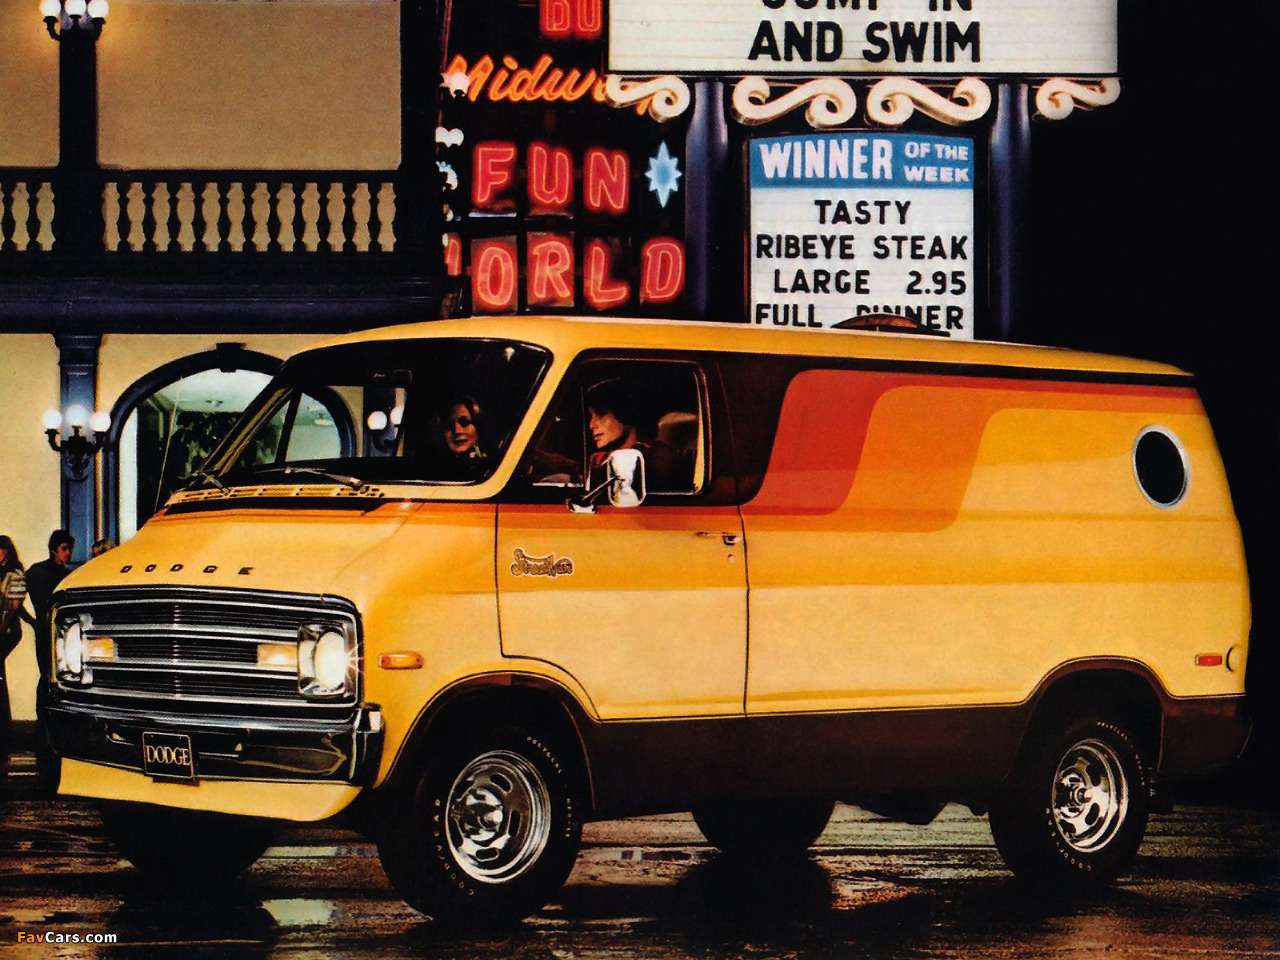 1976 Dodge Street van online puzzel